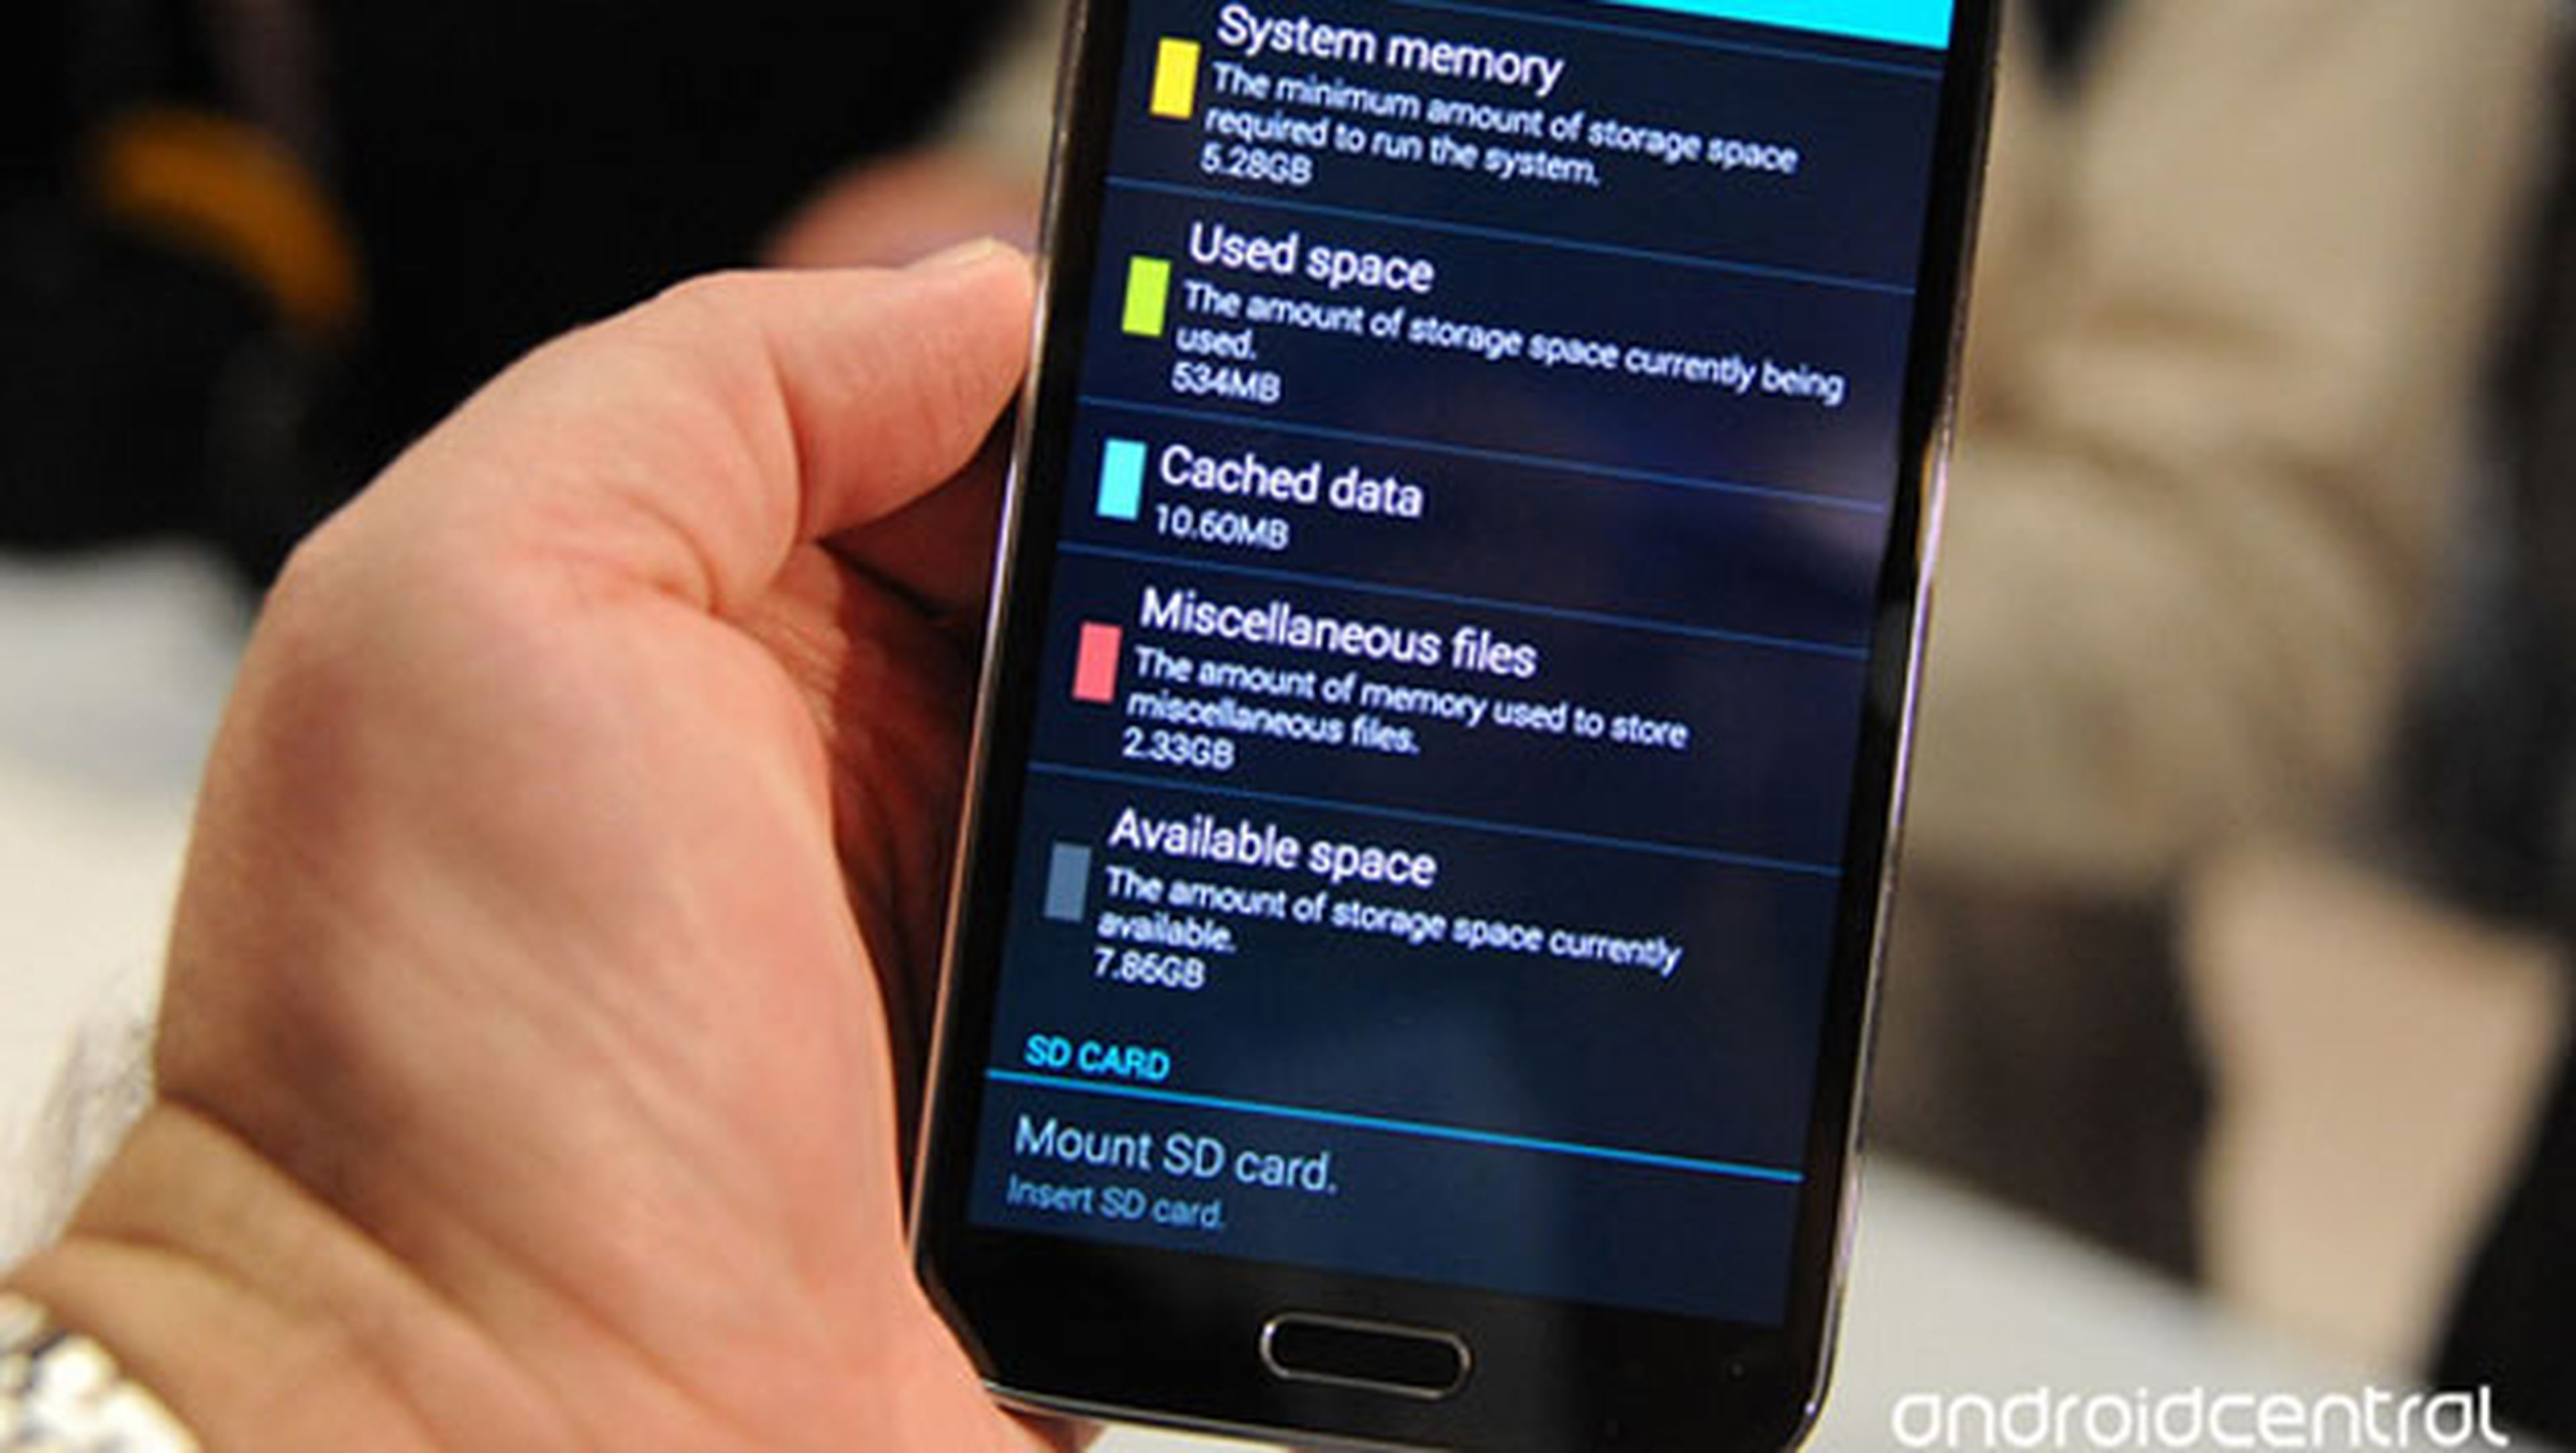 Kenia roto Habitual Samsung Galaxy S5 tendrá menos de 8 GB de espacio interno | Computer Hoy